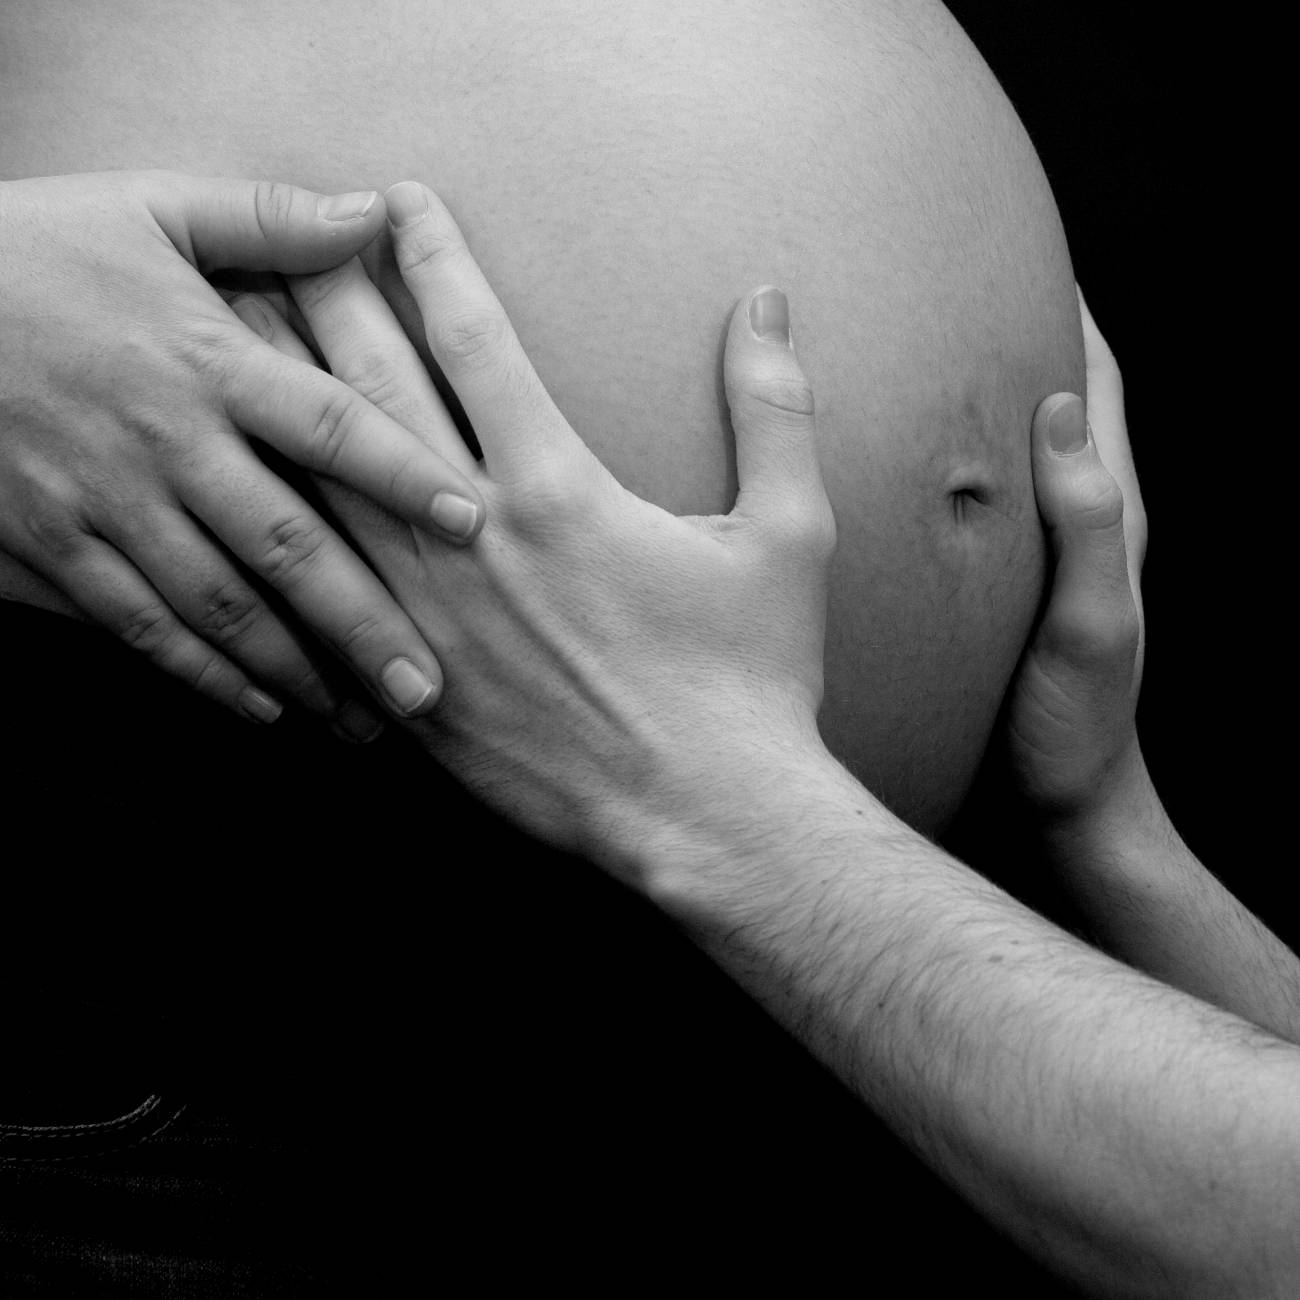 El 62% de las mujeres embarazadas cree exponerse con frecuencia a algún riesgo físico en su trabajo